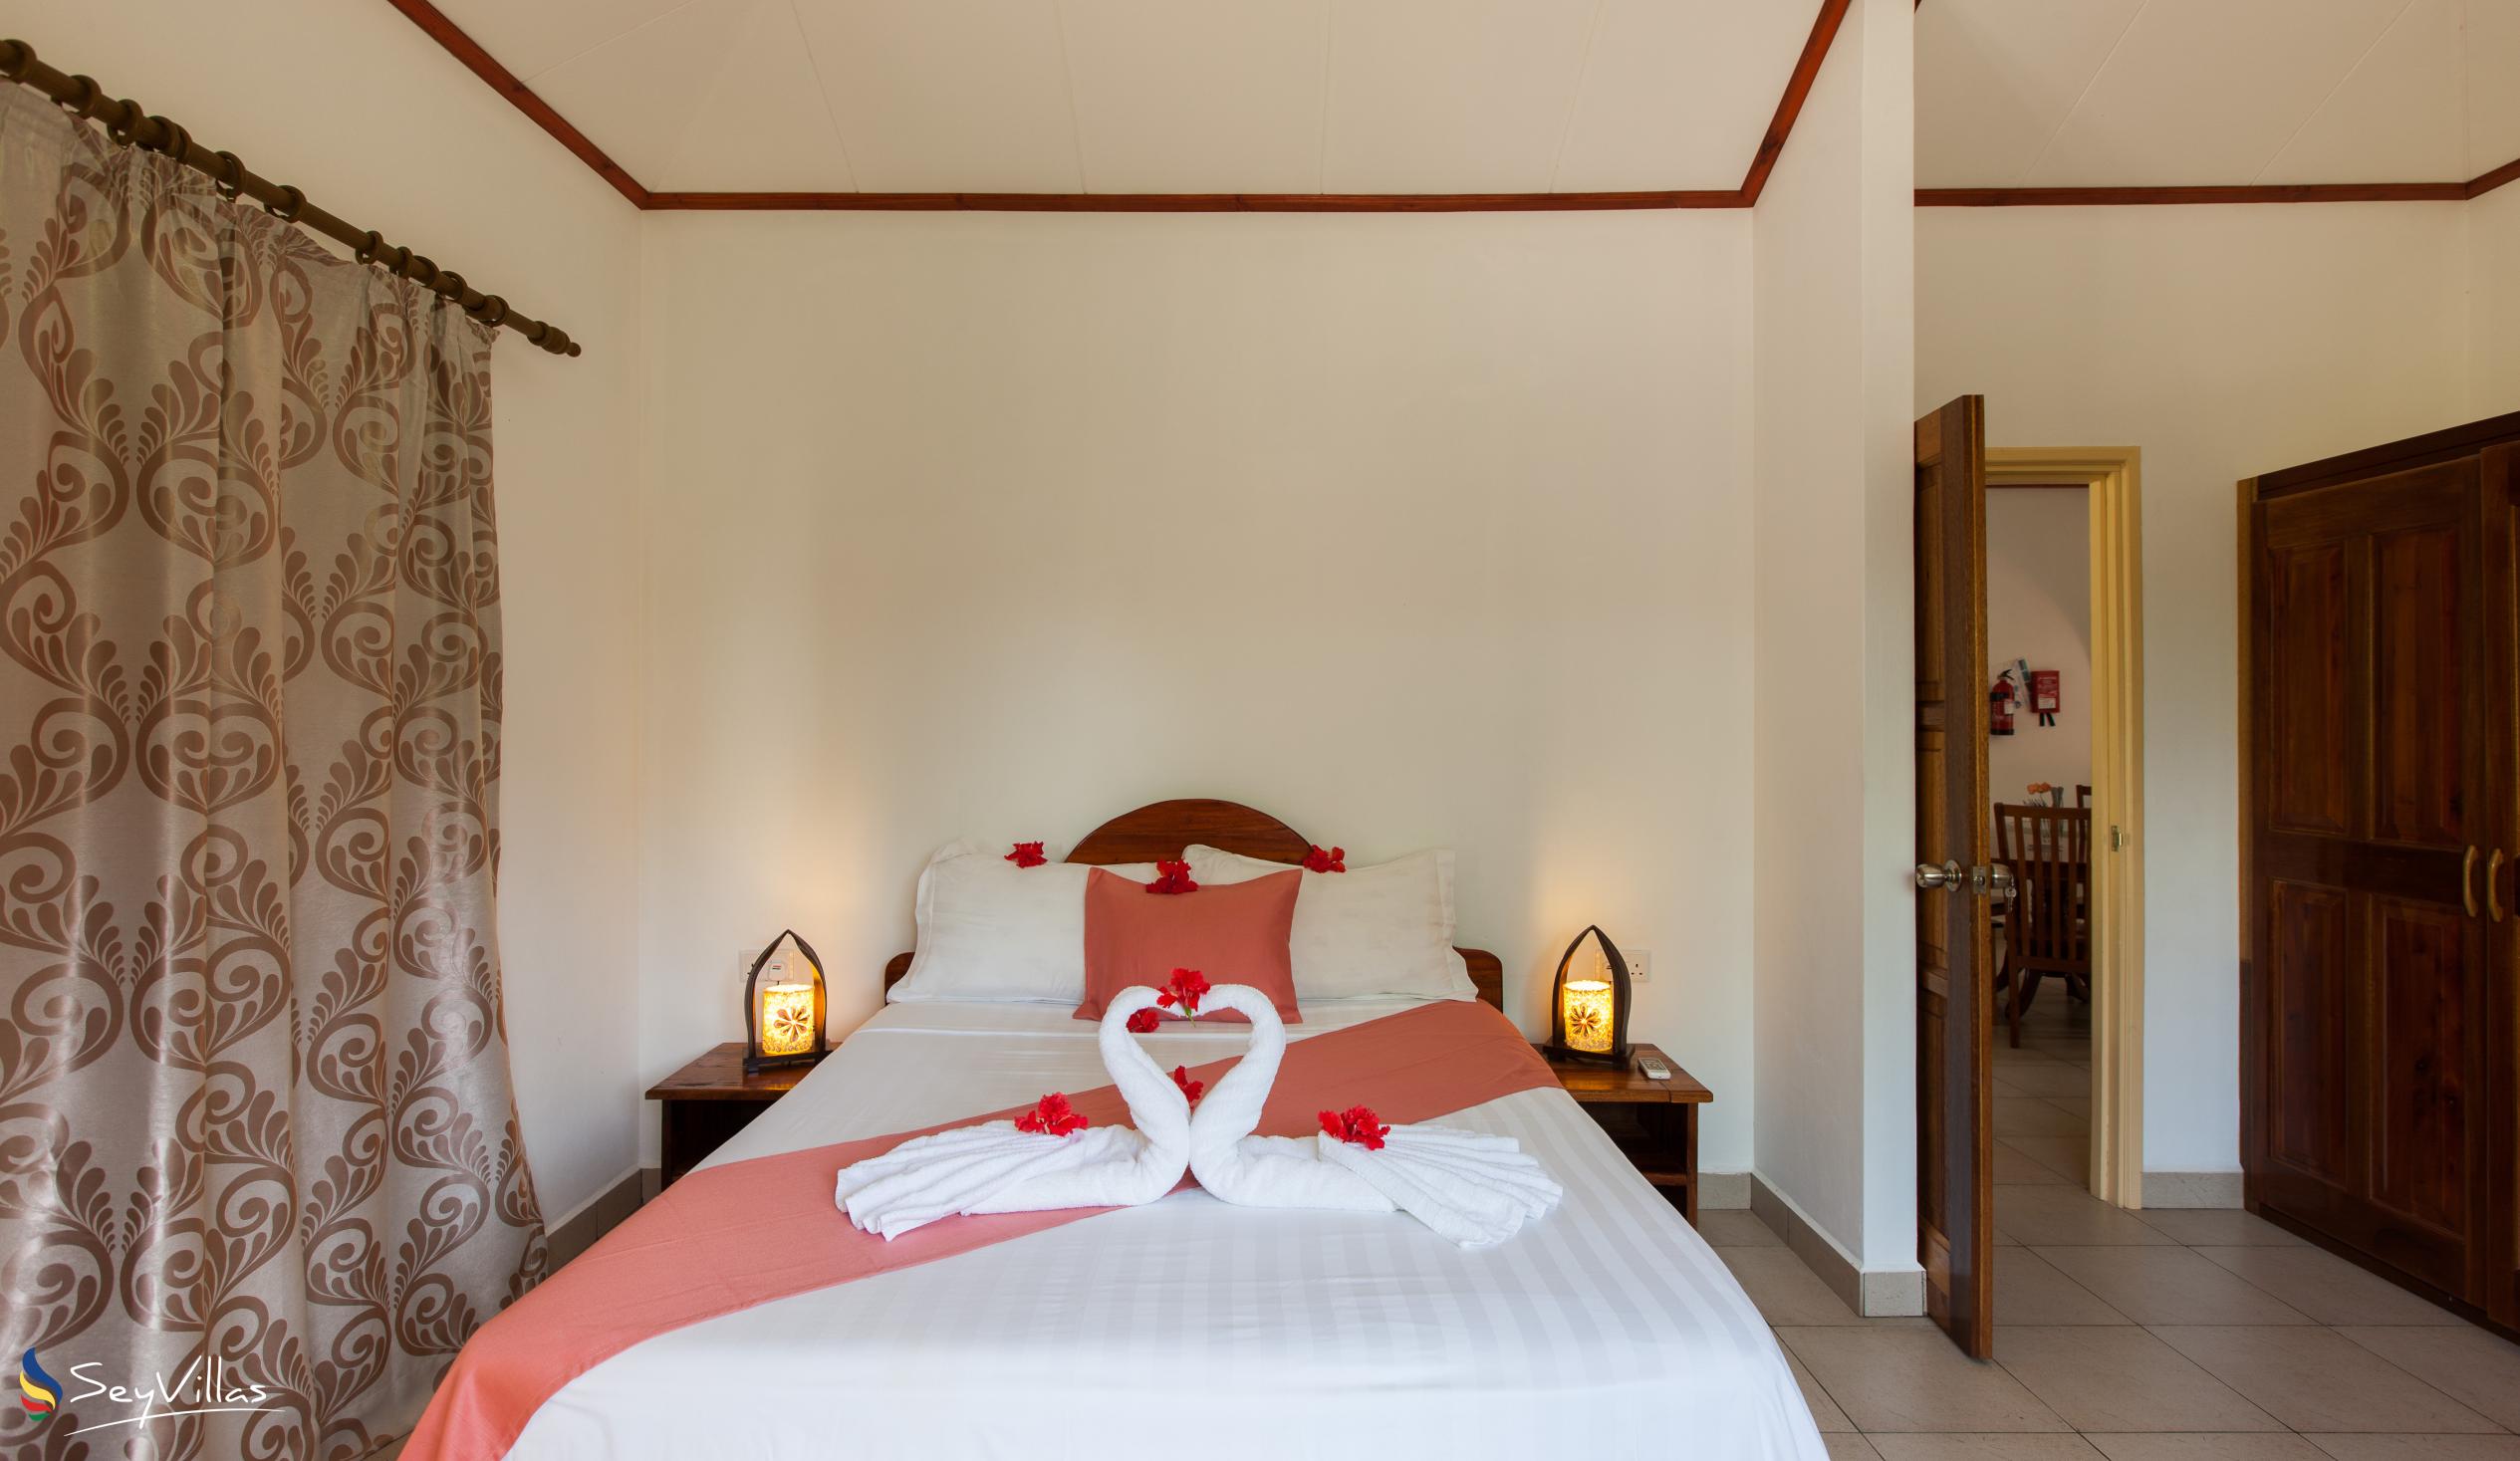 Photo 16: Hostellerie La Digue - 3-Bedroom Chalet - La Digue (Seychelles)